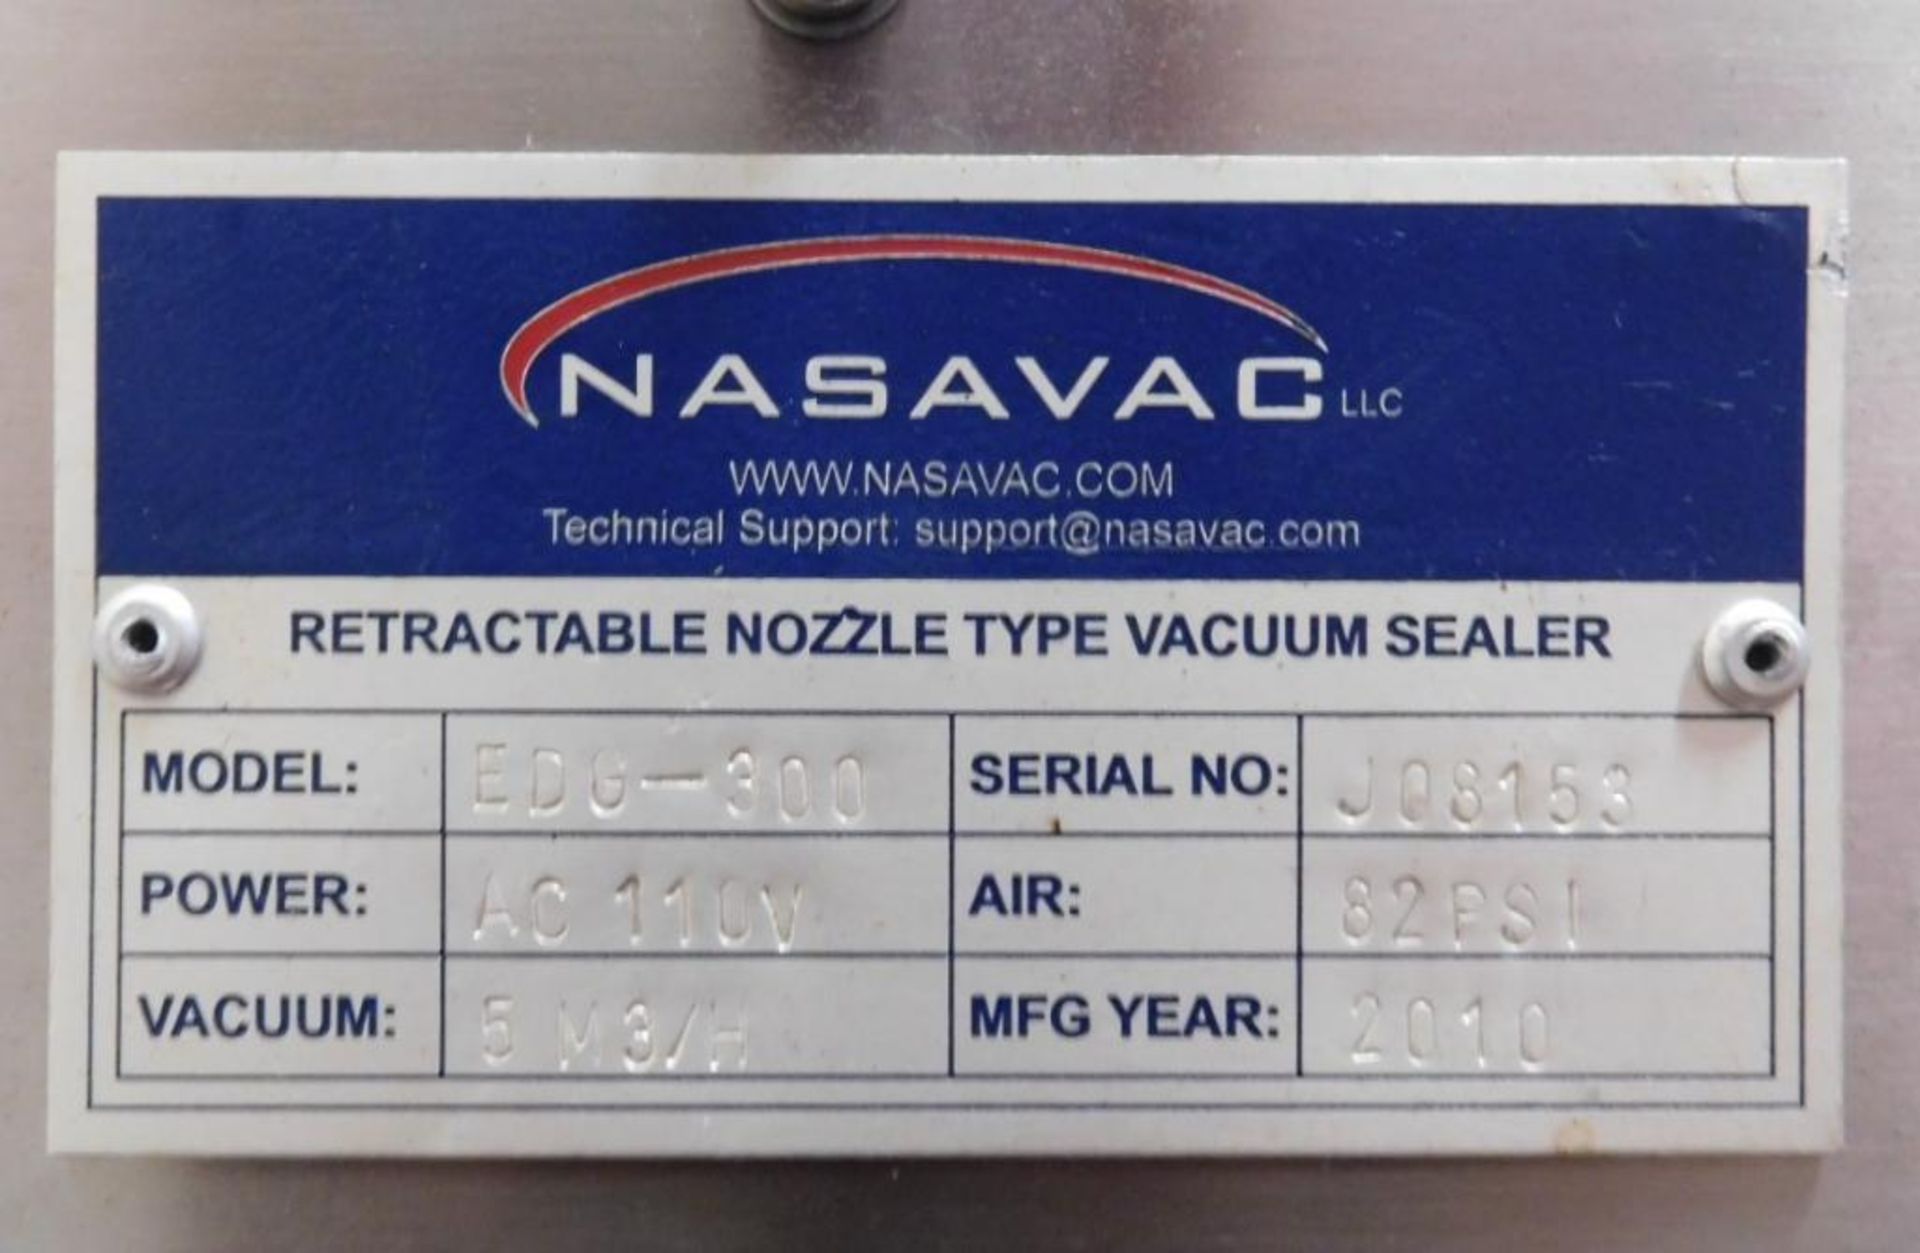 Nasavac Retractable Nozzle Type Vacuum Sealer - Image 4 of 4